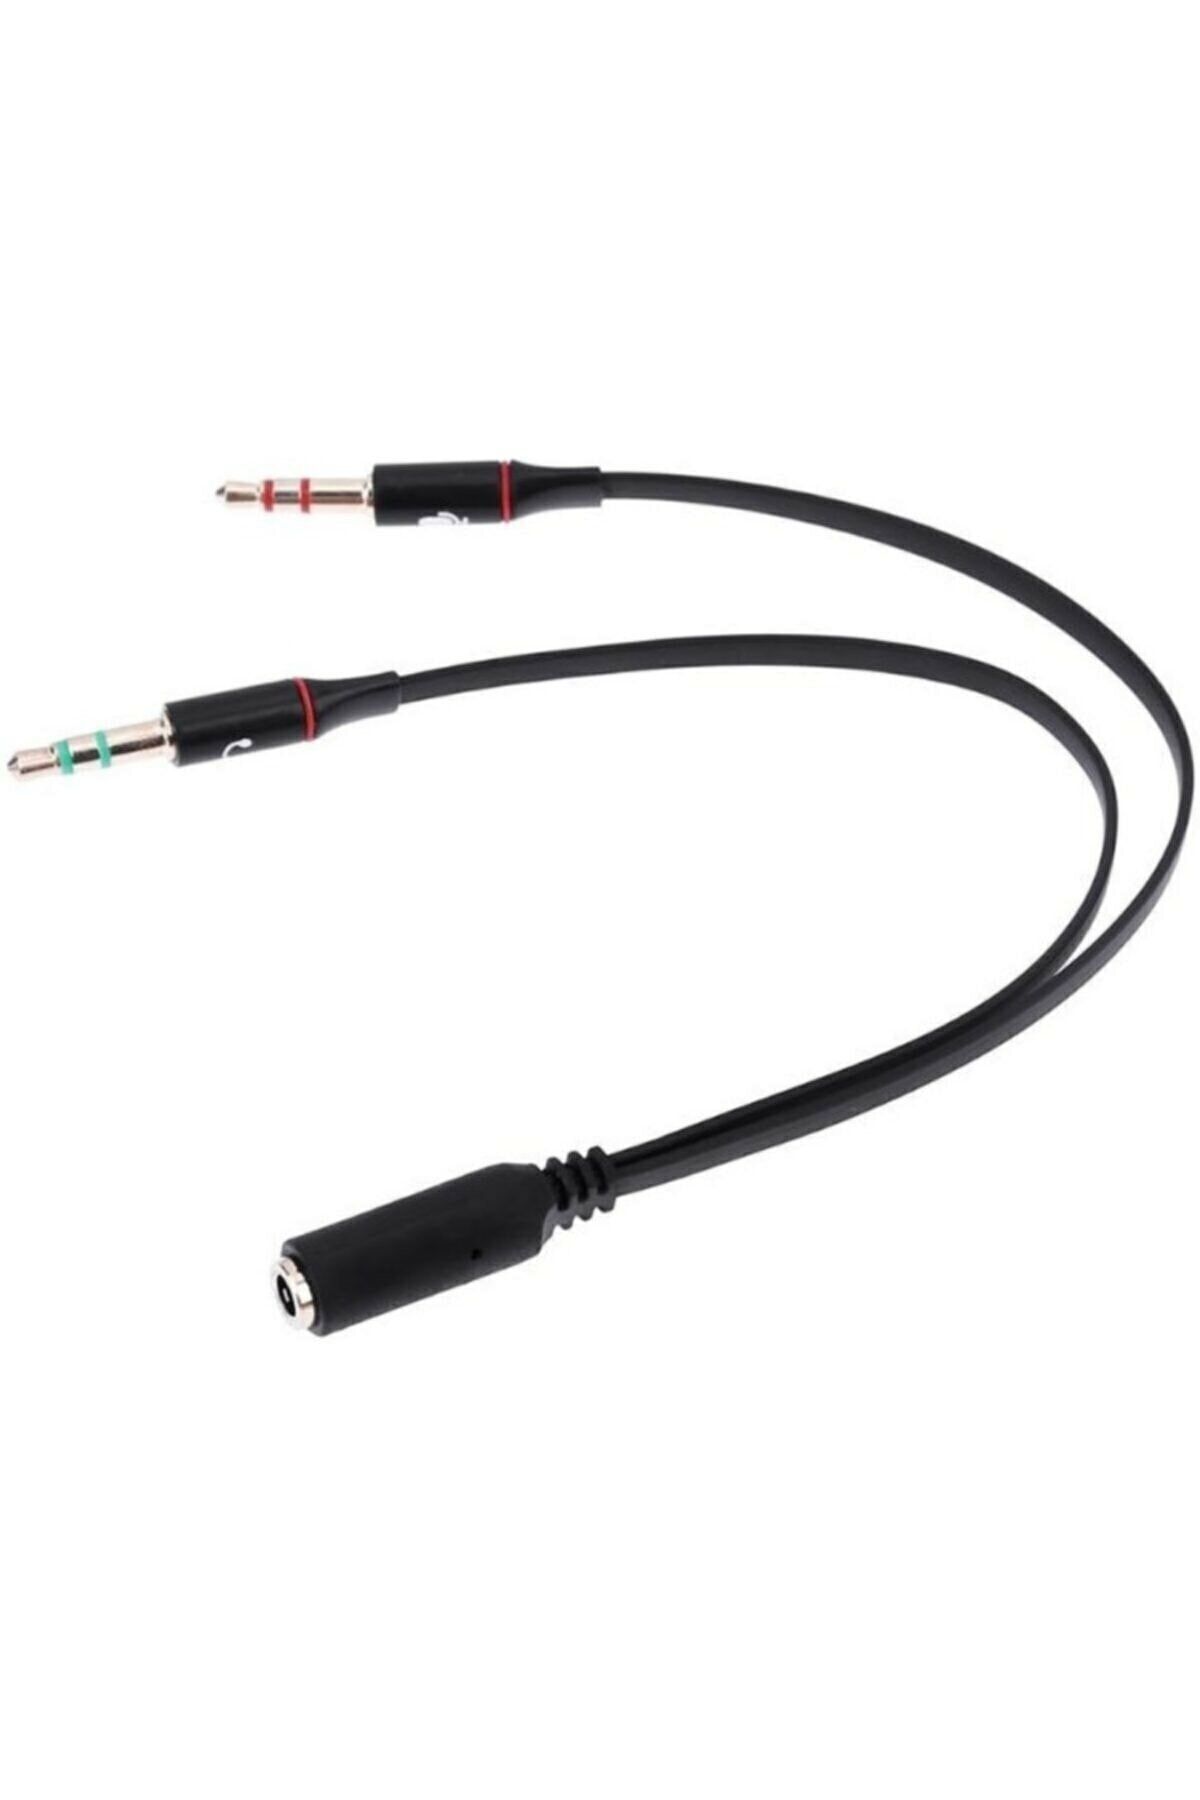 gaman Kulaklık Mikrofon 3.5mm Çevirici Ayırıcı Switch Splitter - Kablo - Tek Girişi Çifte Çevirir